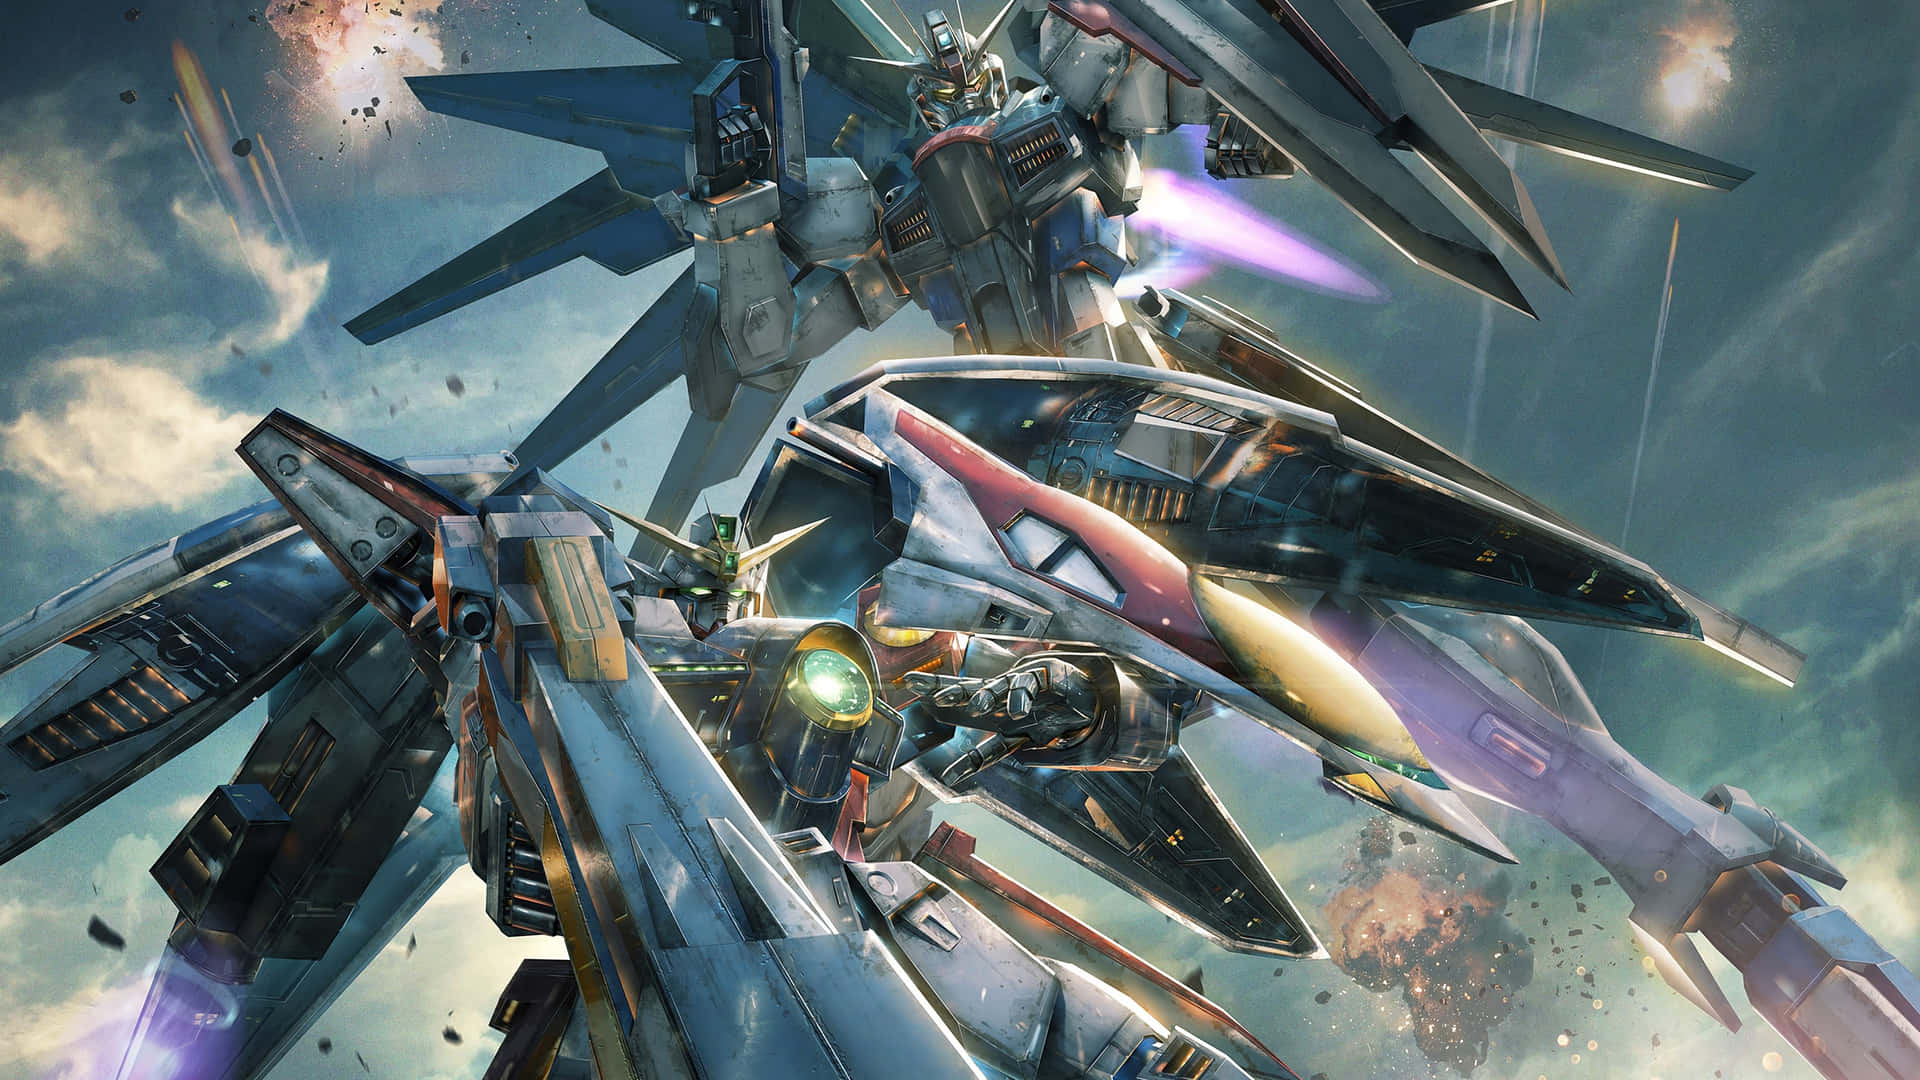 !Oplev den episke handling af Gundam med disse utrolige 4K-billeder! Wallpaper